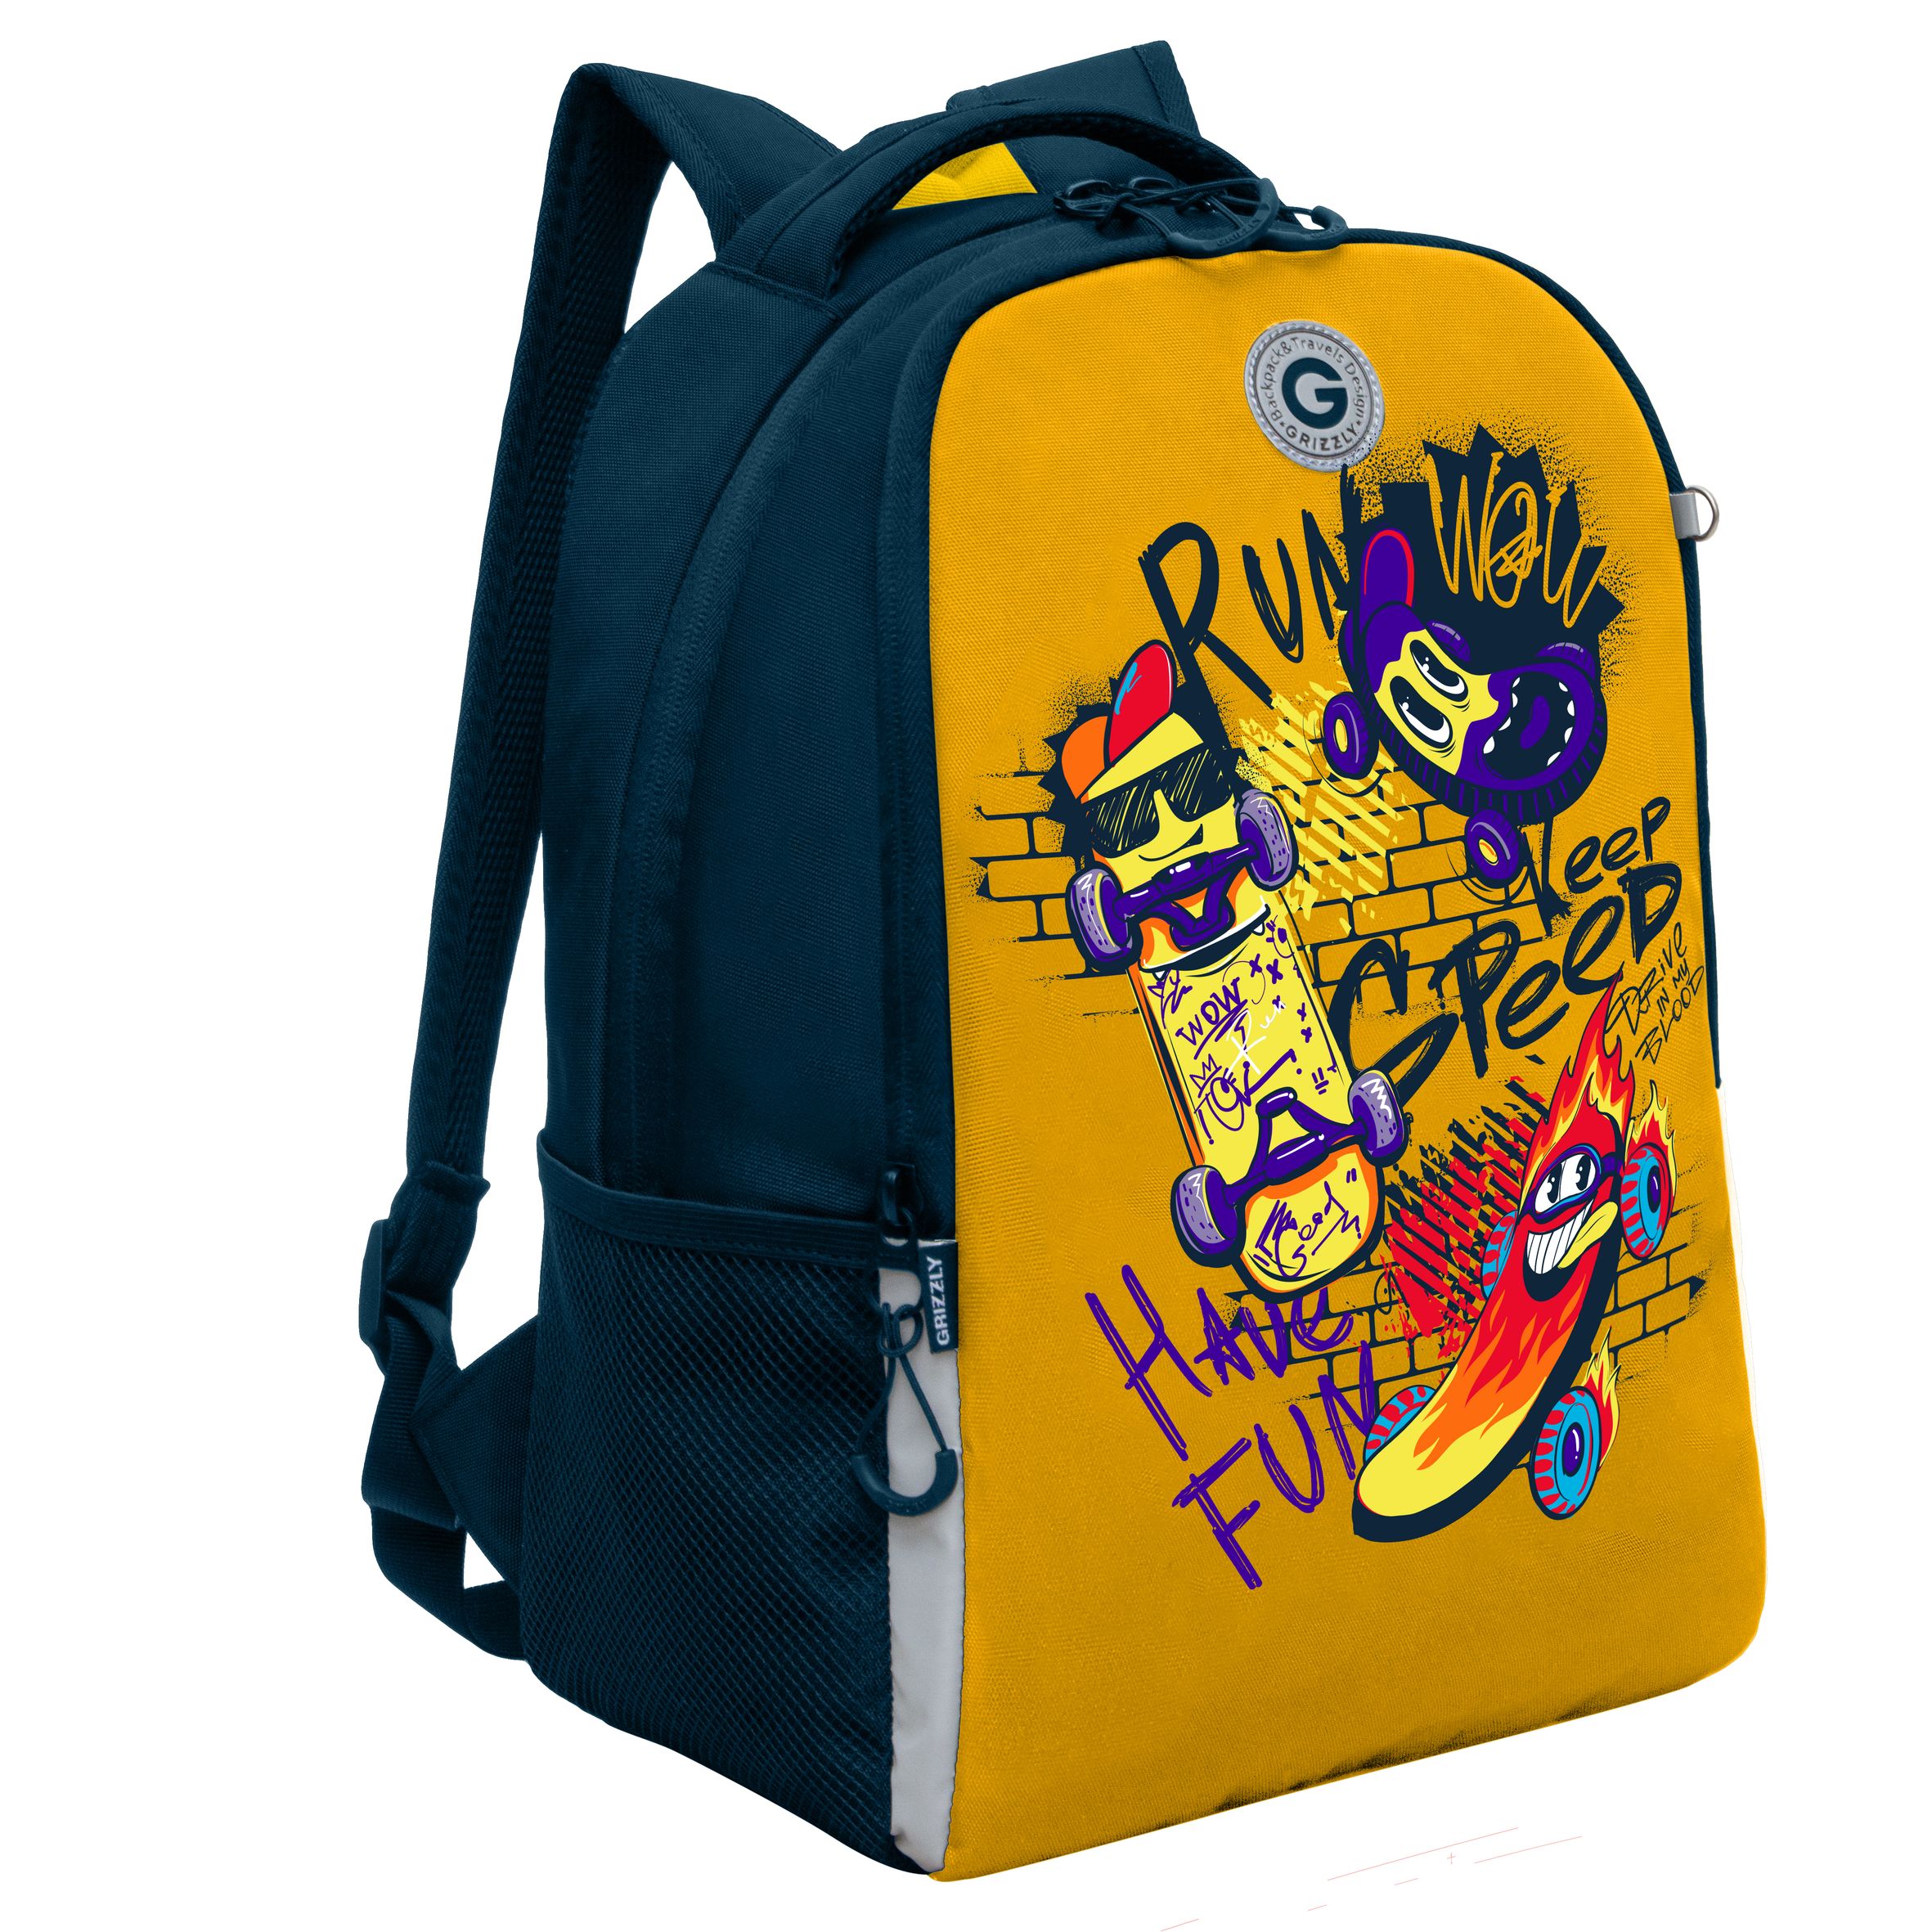 Рюкзак школьный GRIZZLY легкий с жесткой спинкой, 2 отделения, для мальчика RB-451-7/2 рюкзак школьный 42 см дино два отделения